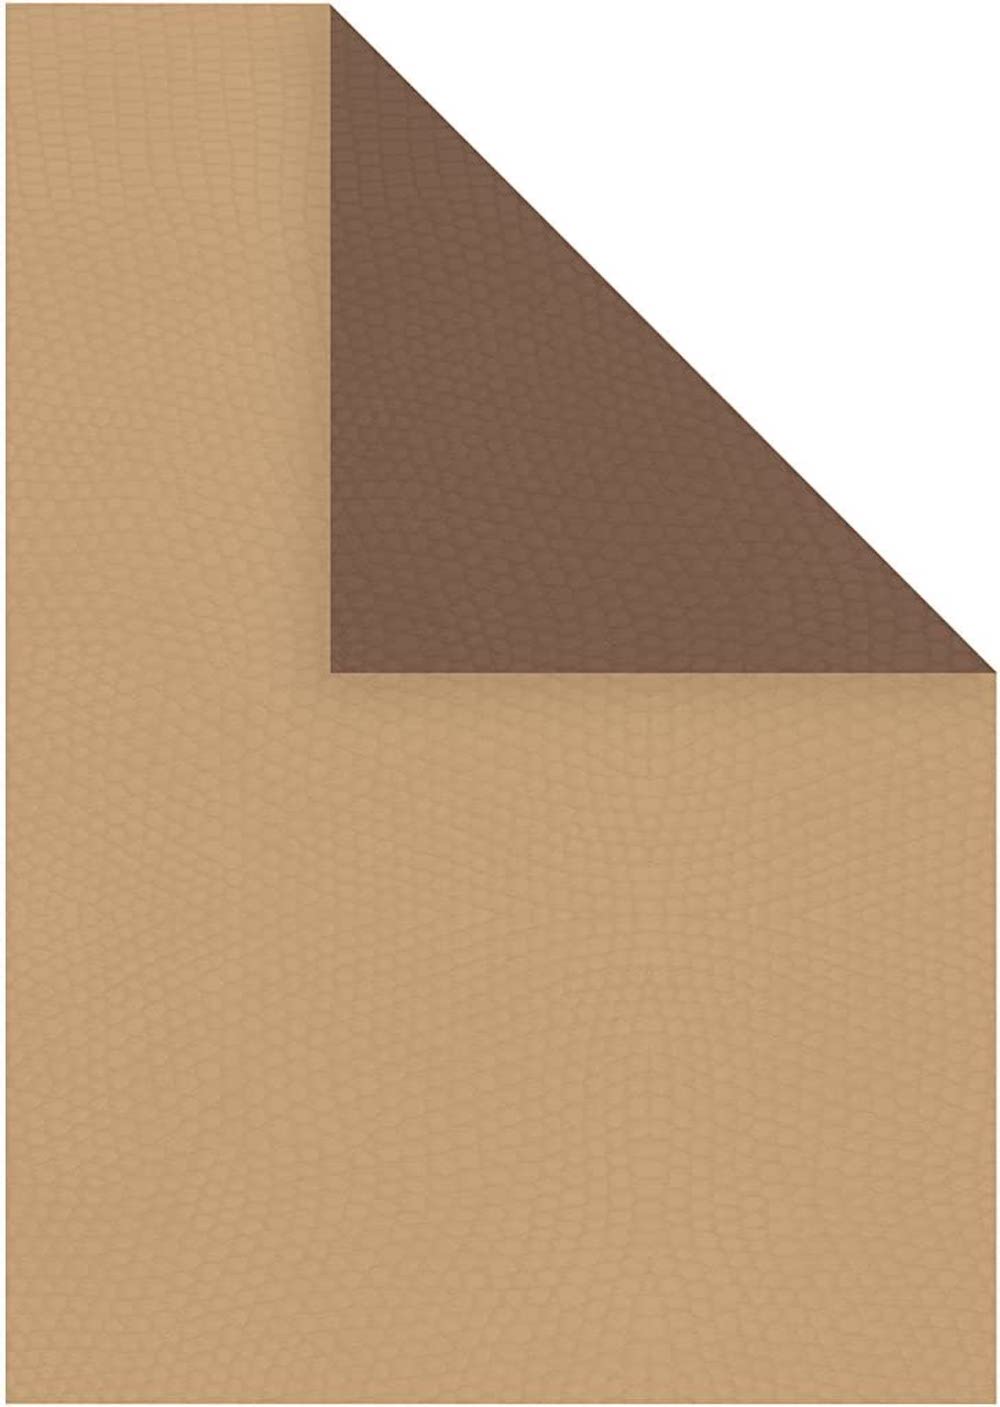 Duo Papier Strukturpapier, A4 21x30 cm, 100g, 20Blatt 